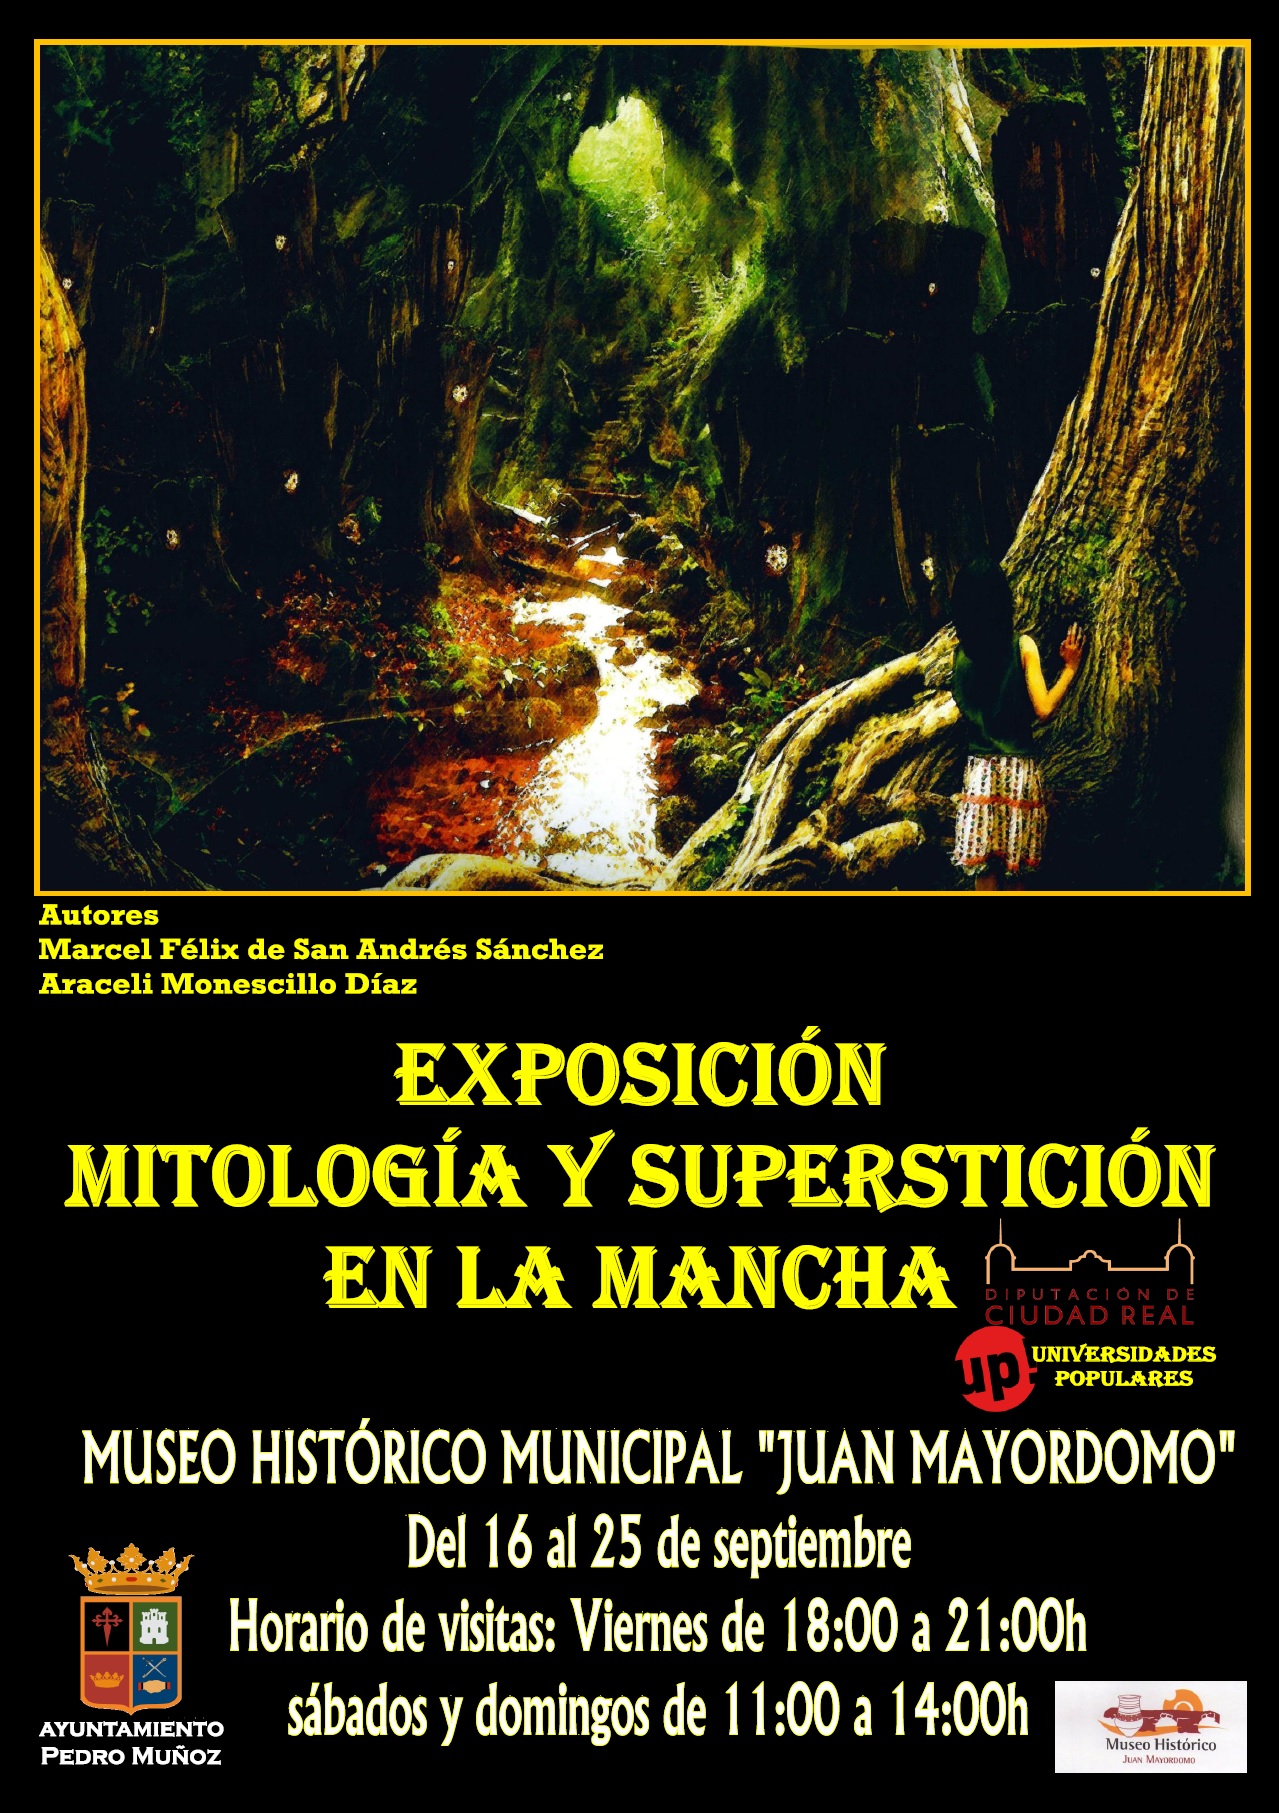 Una exposición para conocer la "mitología y superstición en La Mancha" en el Museo Histórico Municipal